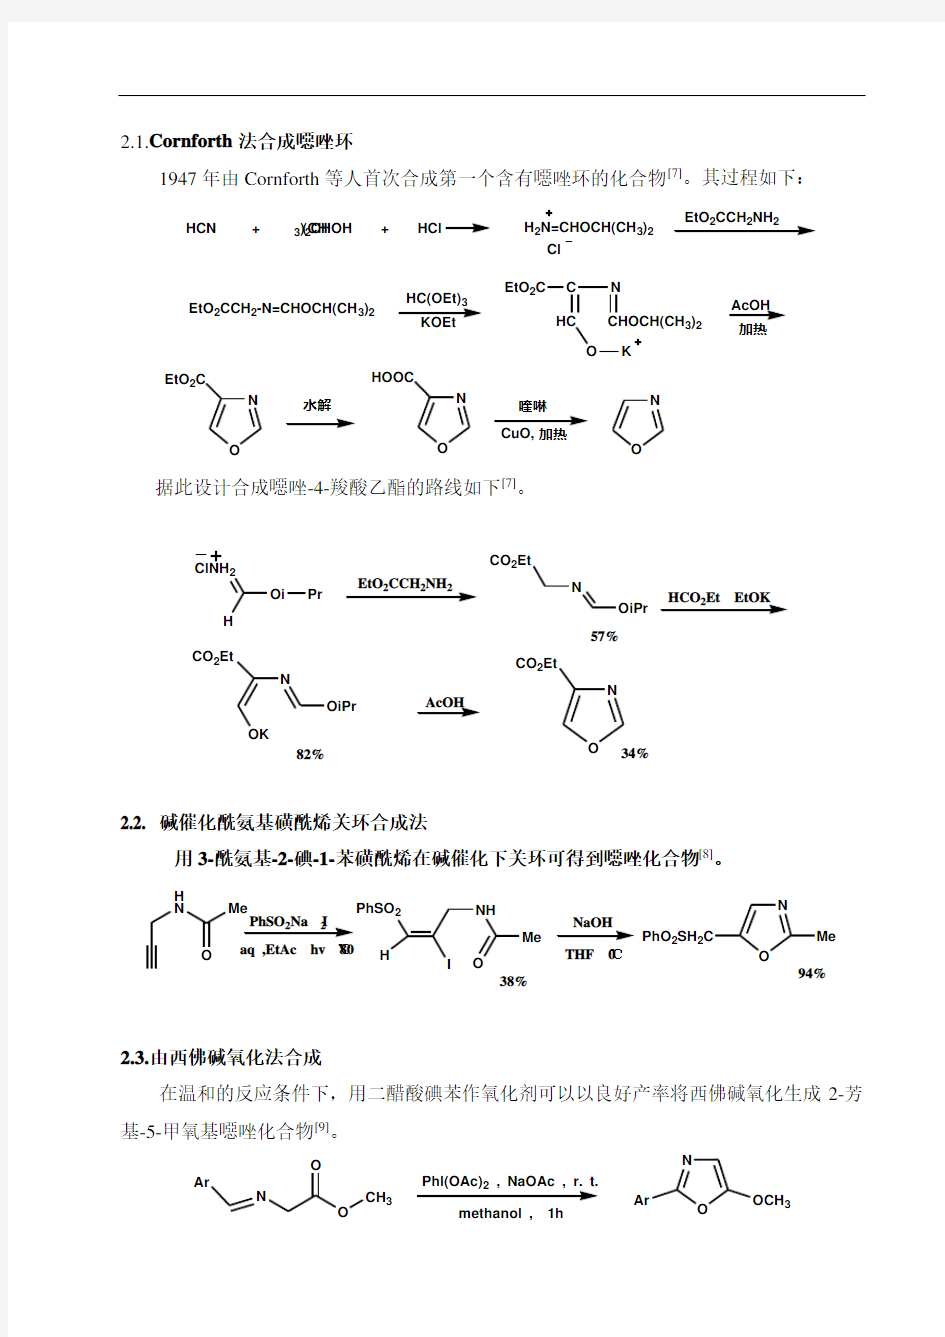 恶唑类化合物的合成方法综述